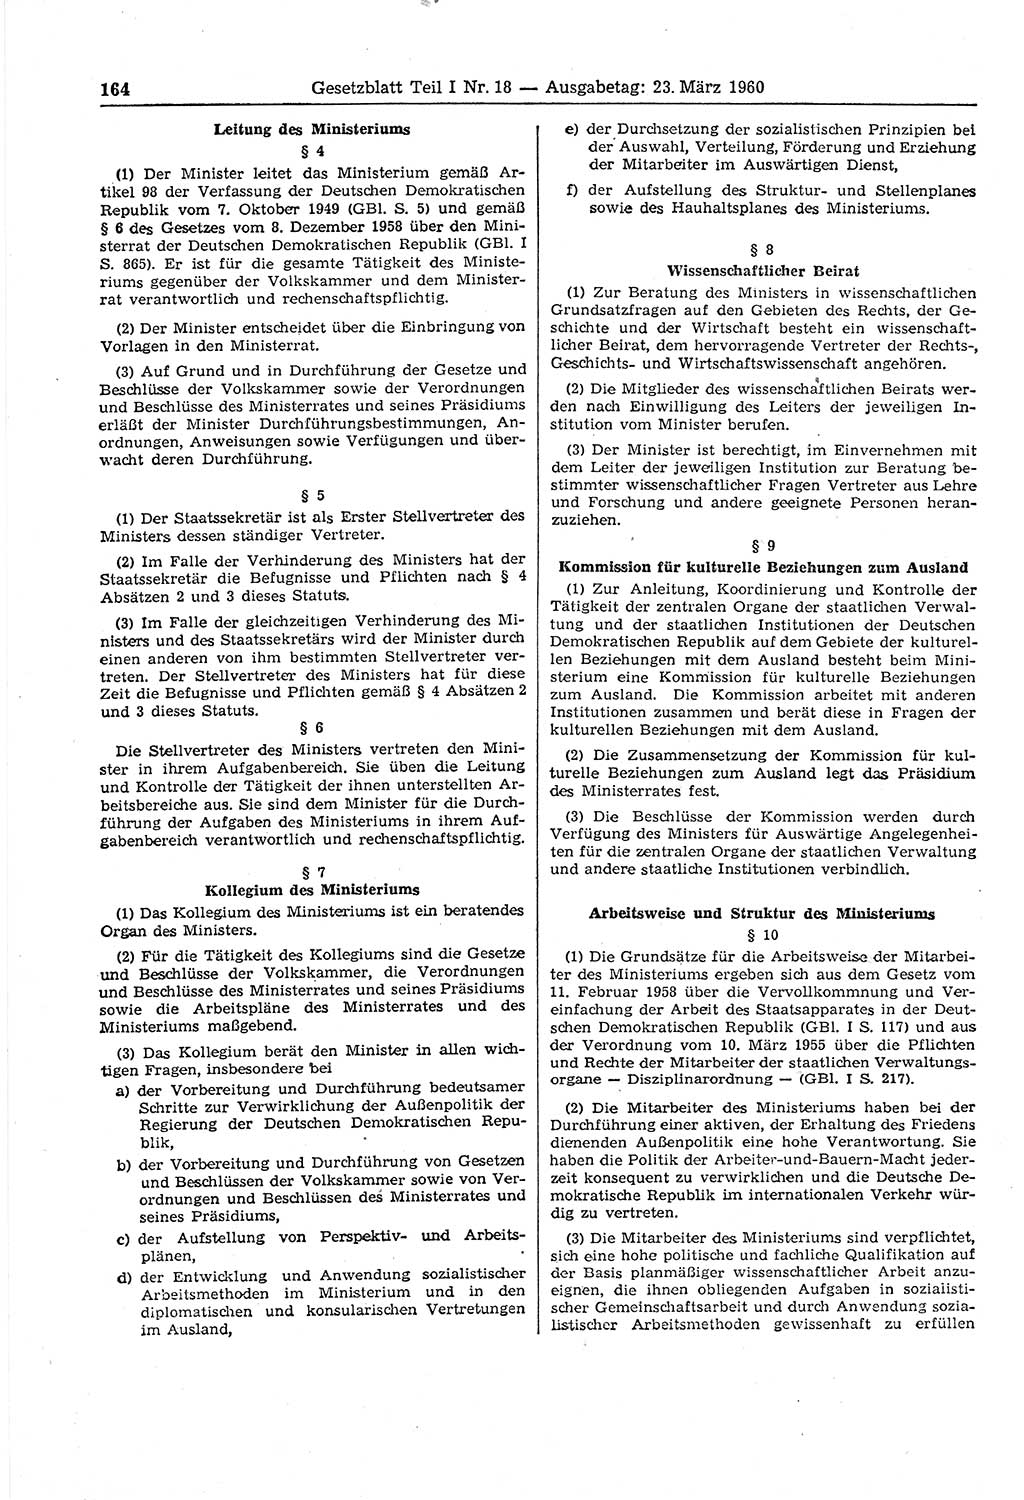 Gesetzblatt (GBl.) der Deutschen Demokratischen Republik (DDR) Teil Ⅰ 1960, Seite 164 (GBl. DDR Ⅰ 1960, S. 164)